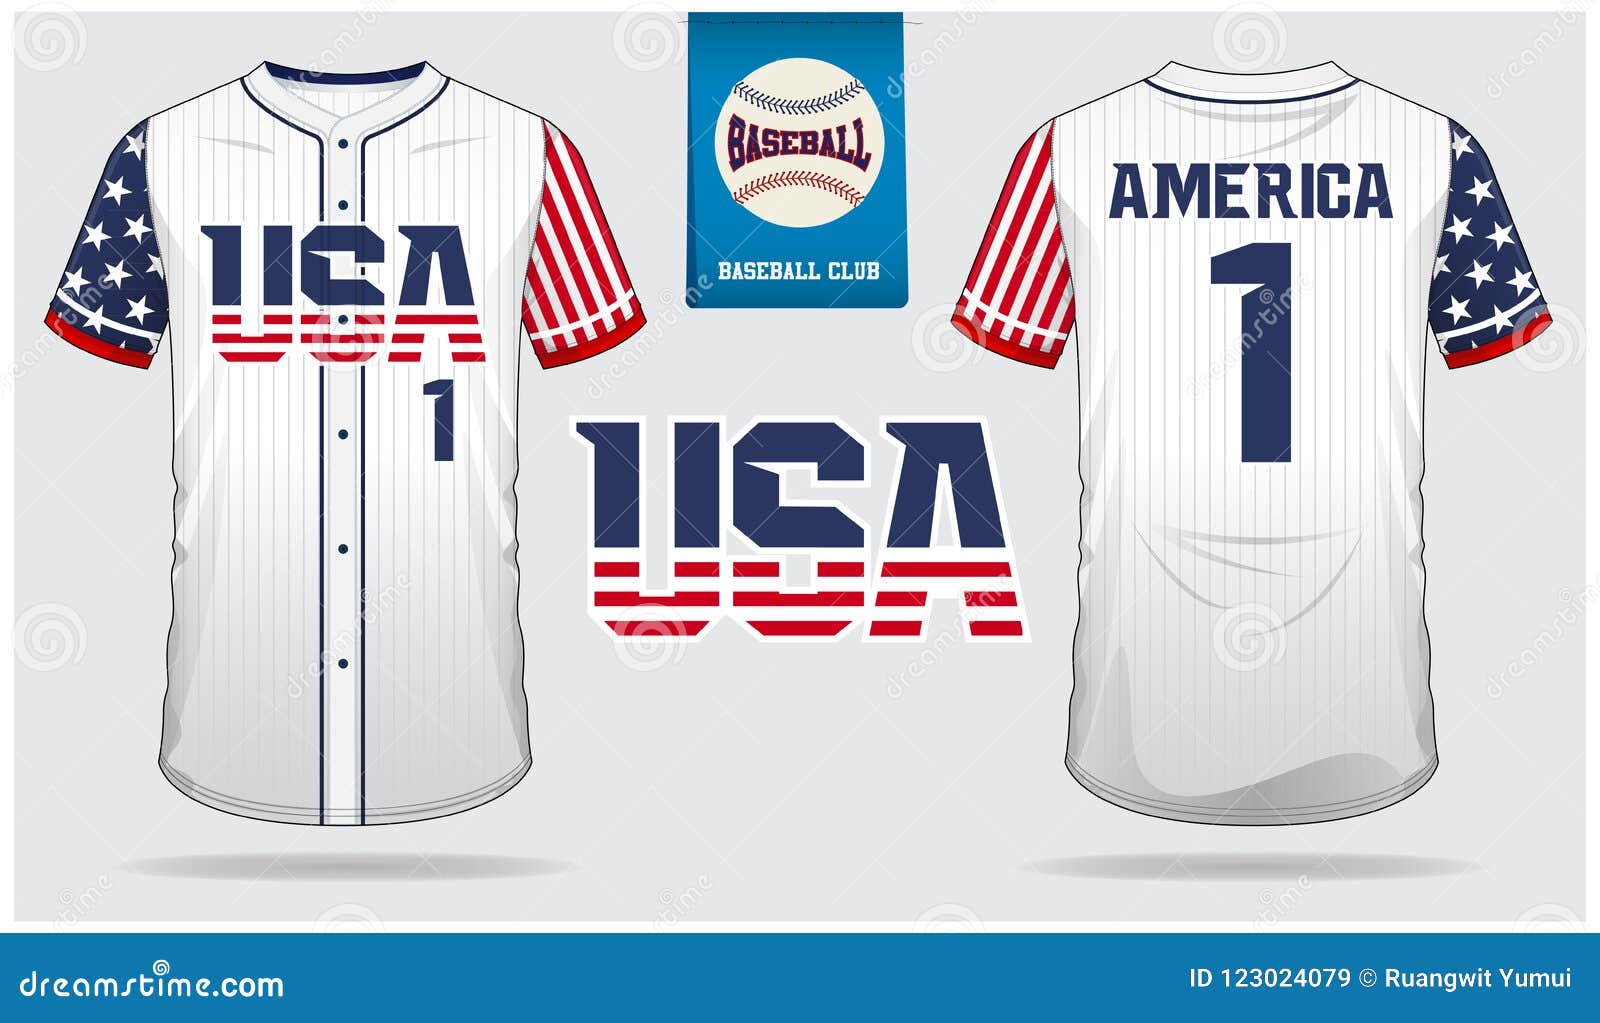 Download USA Baseball Jersey, Sport Uniform, Raglan T-shirt Sport ...